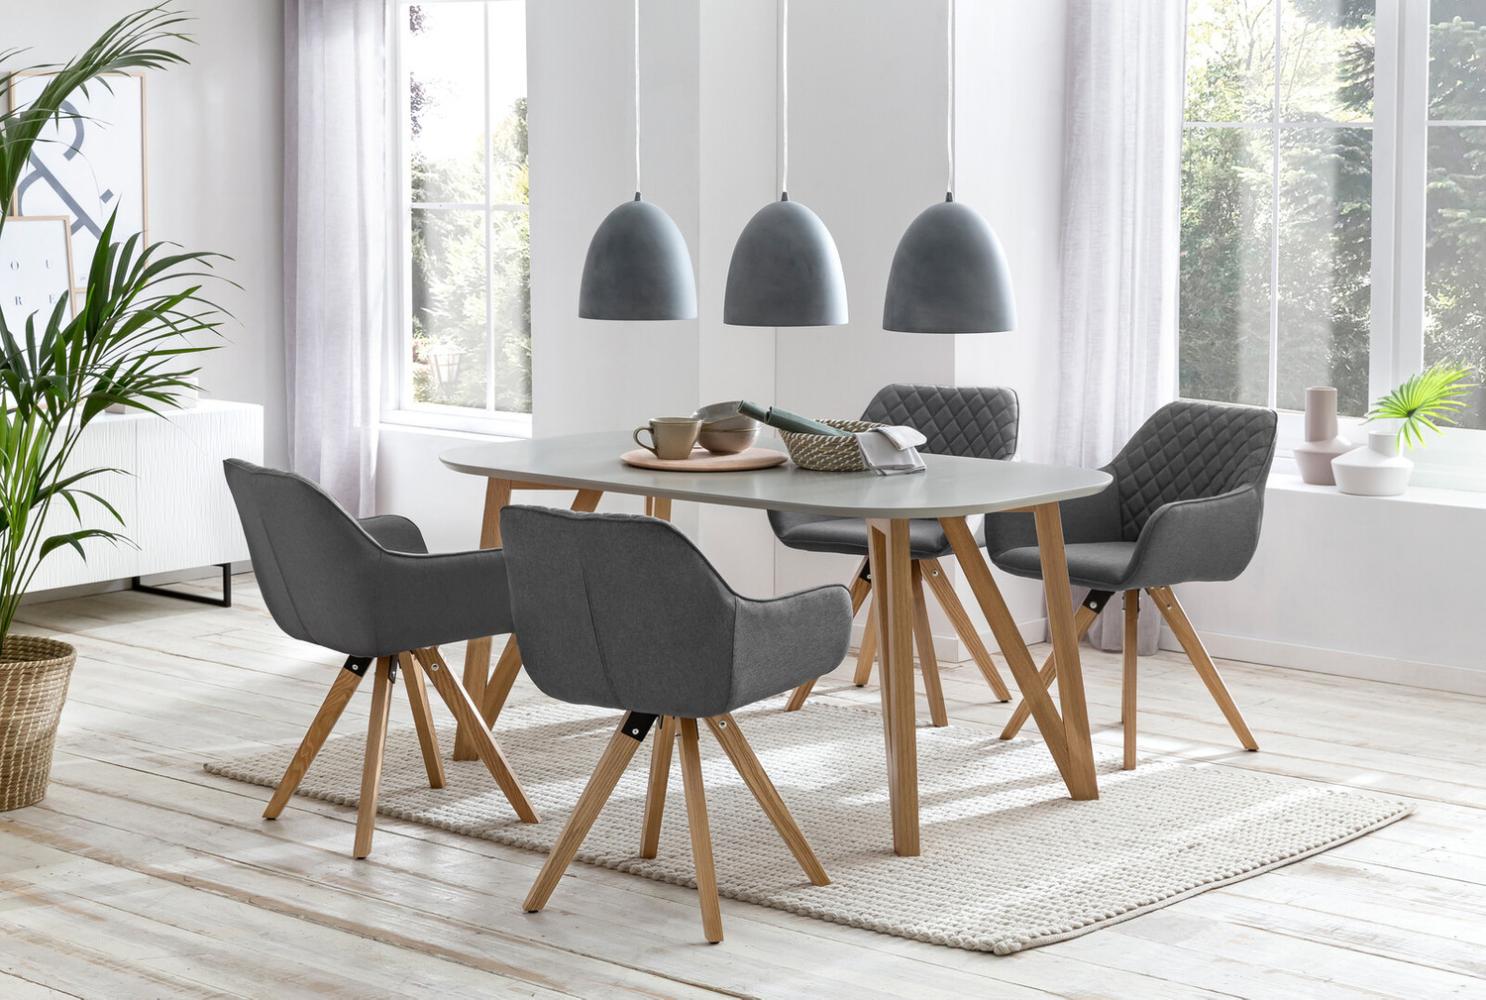 Essgruppe 5-tlg. Tisch 160x90 aus MDF Grau + 4 Stühle aus Eichenholz Textil Grau Bild 1